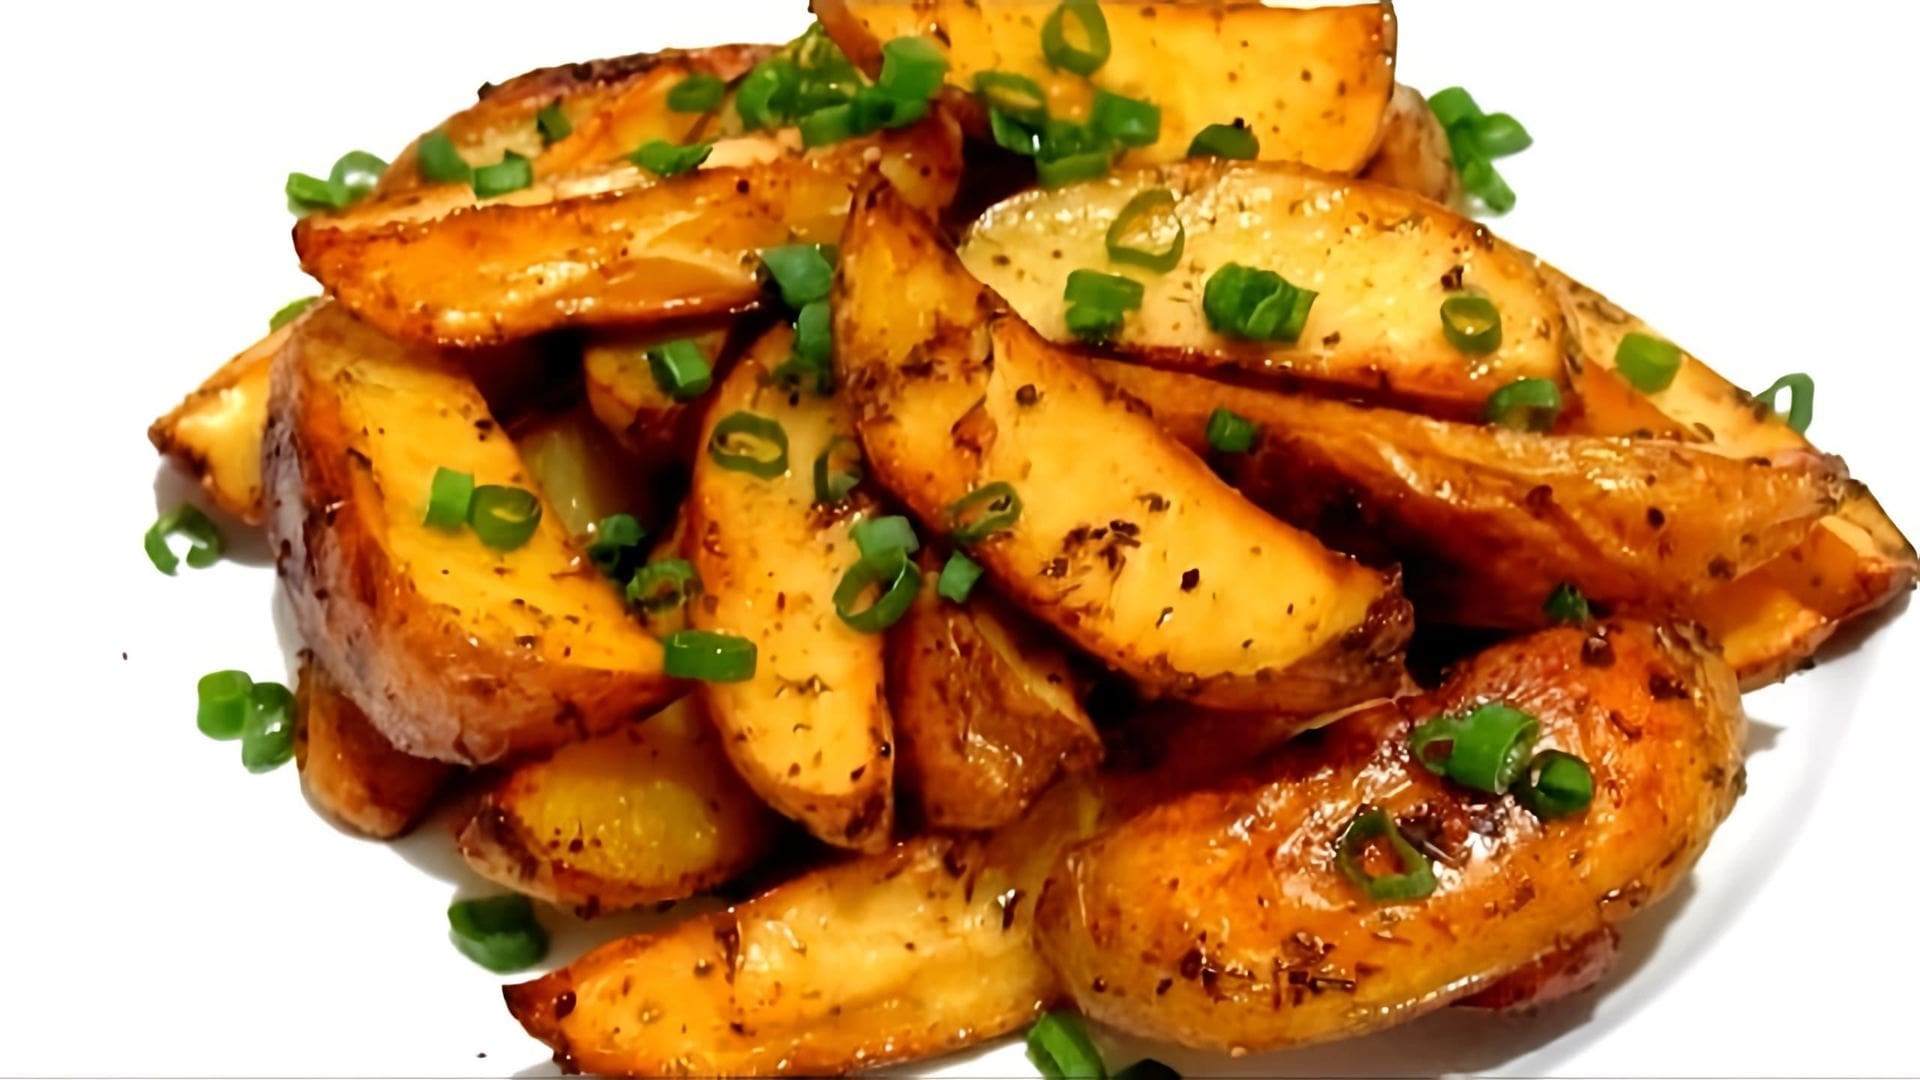 КАРТОФЕЛЬ по деревенски или по селянски - простое, сытное, ароматное и очень вкусное блюдо из картофеля, ... 